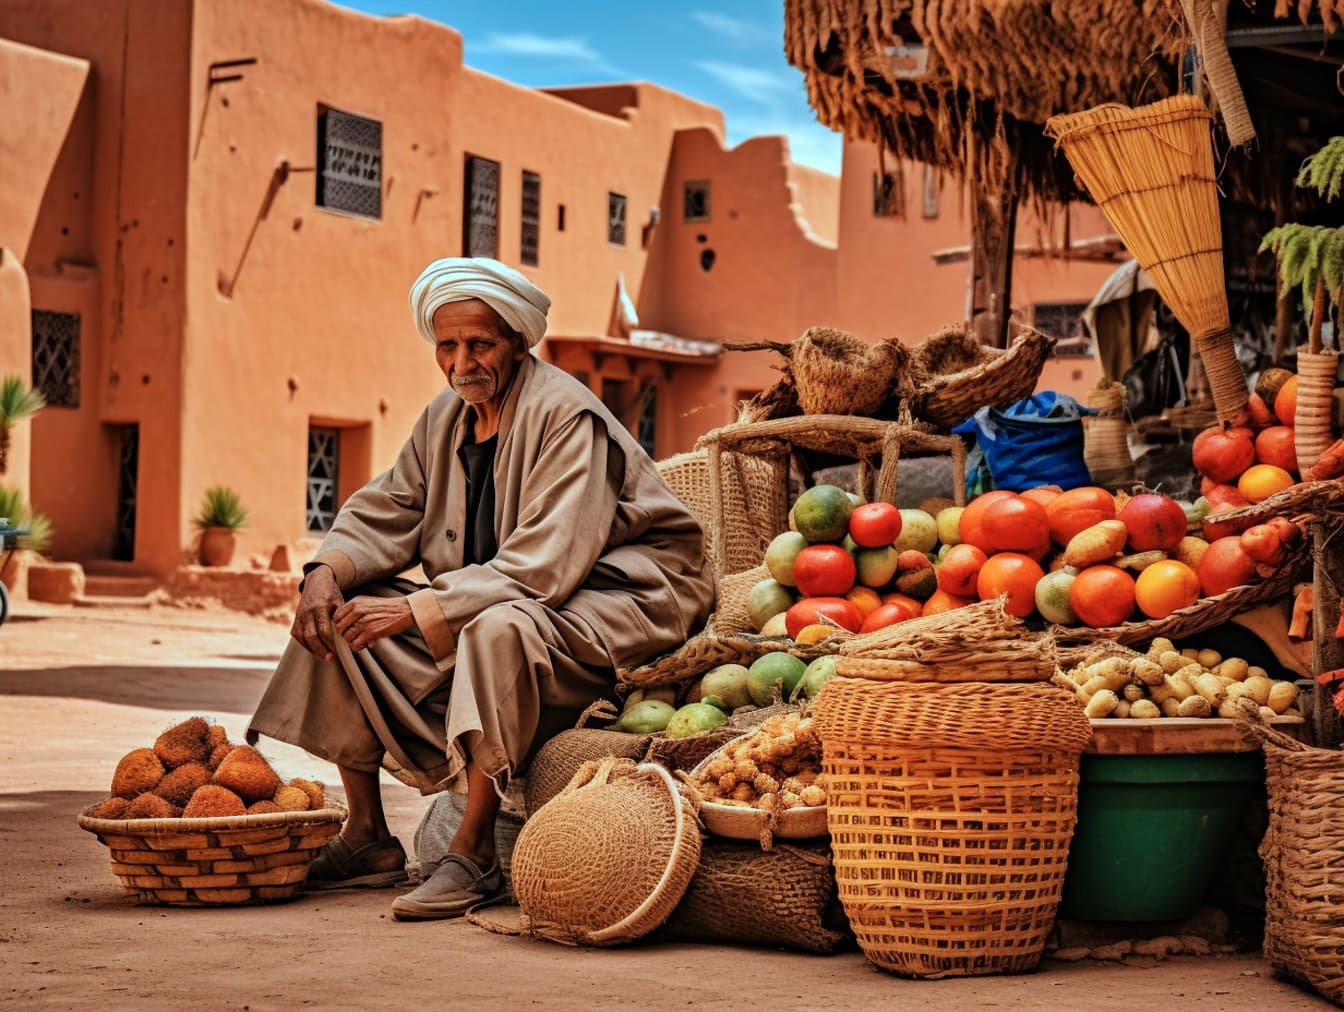 Eldre mann i tradisjonelle arabiske klær sittende ved siden av en haug med frukt på gatemarked i gamle delen av byen i Marokko